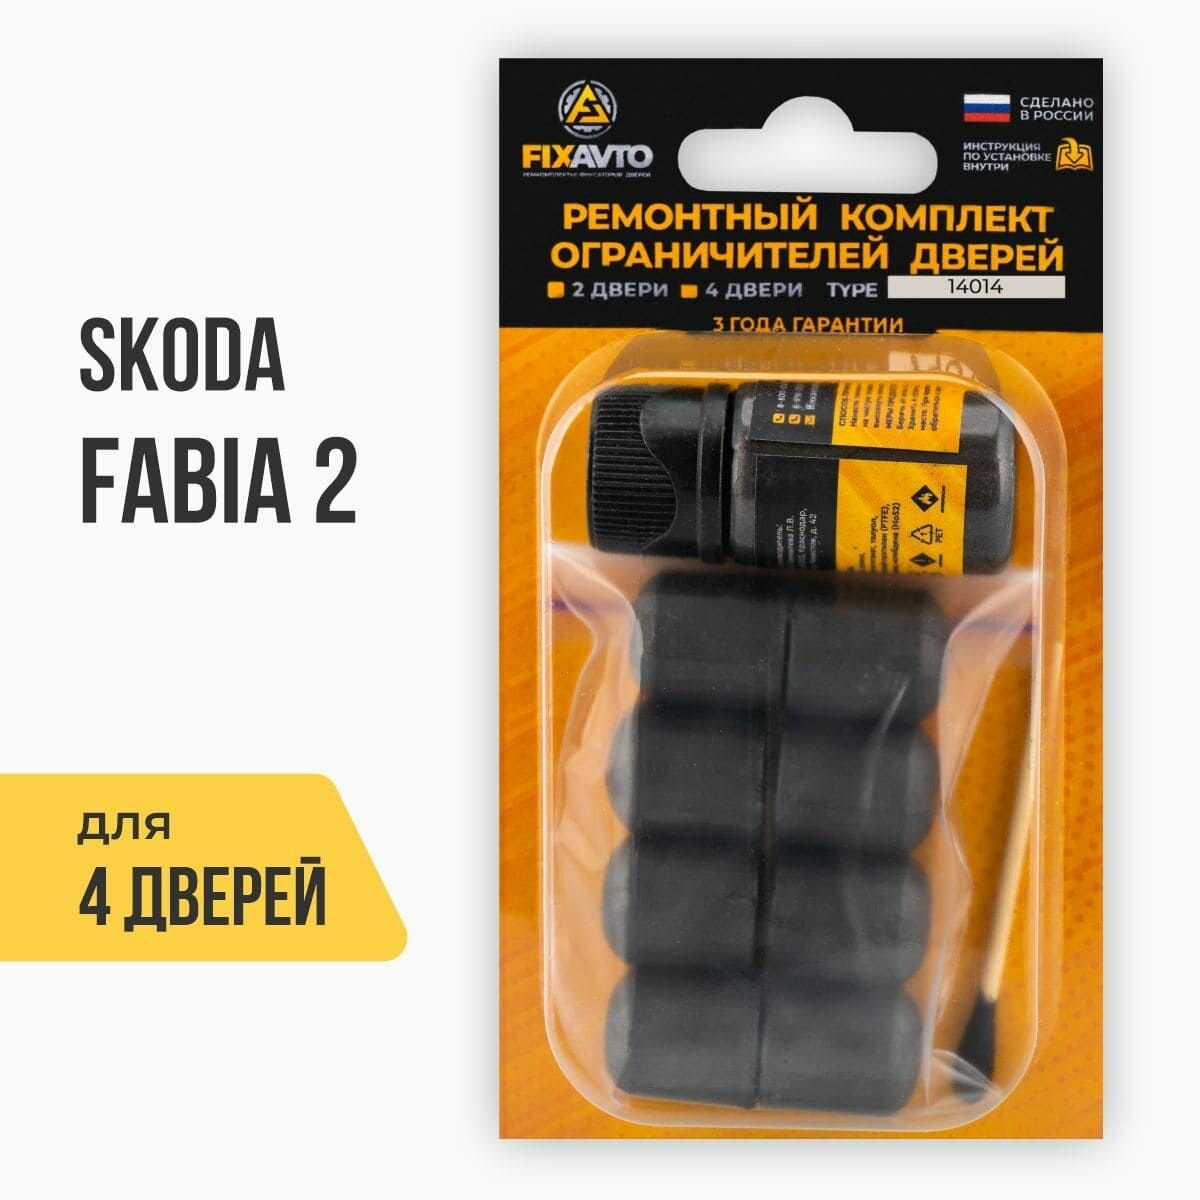 Ремкомплект ограничителей на 4 двери Skoda FABIA (II) 2 поколения Кузова 5J2 5J5 - 2007-2015. Комплект ремонта фиксаторов Шкода Фабия. TYPE 14014